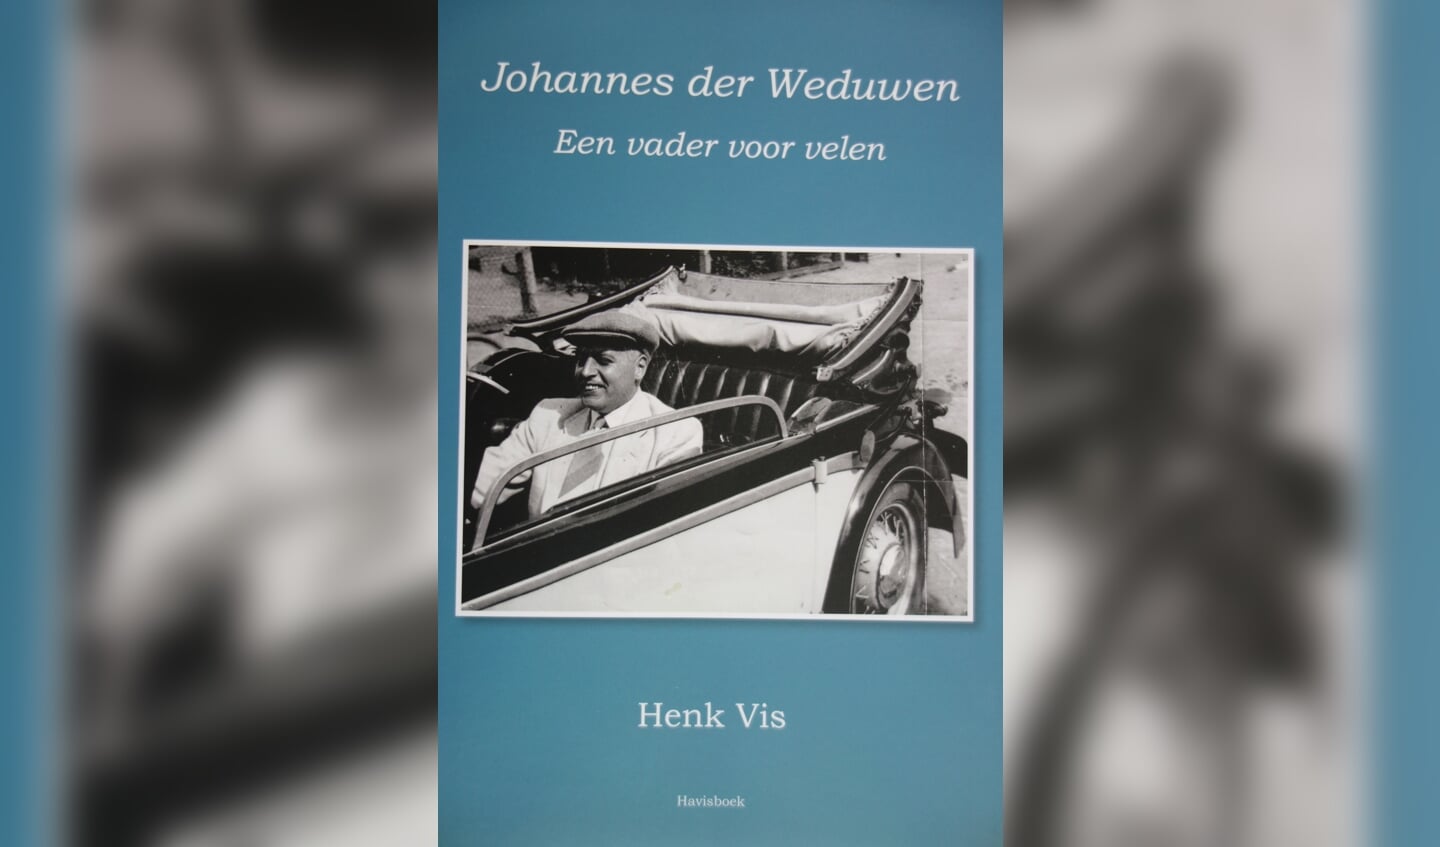 Het boek van Henk Vis wordt 31 maart gepresenteerd. Foto: Clemens Bielen